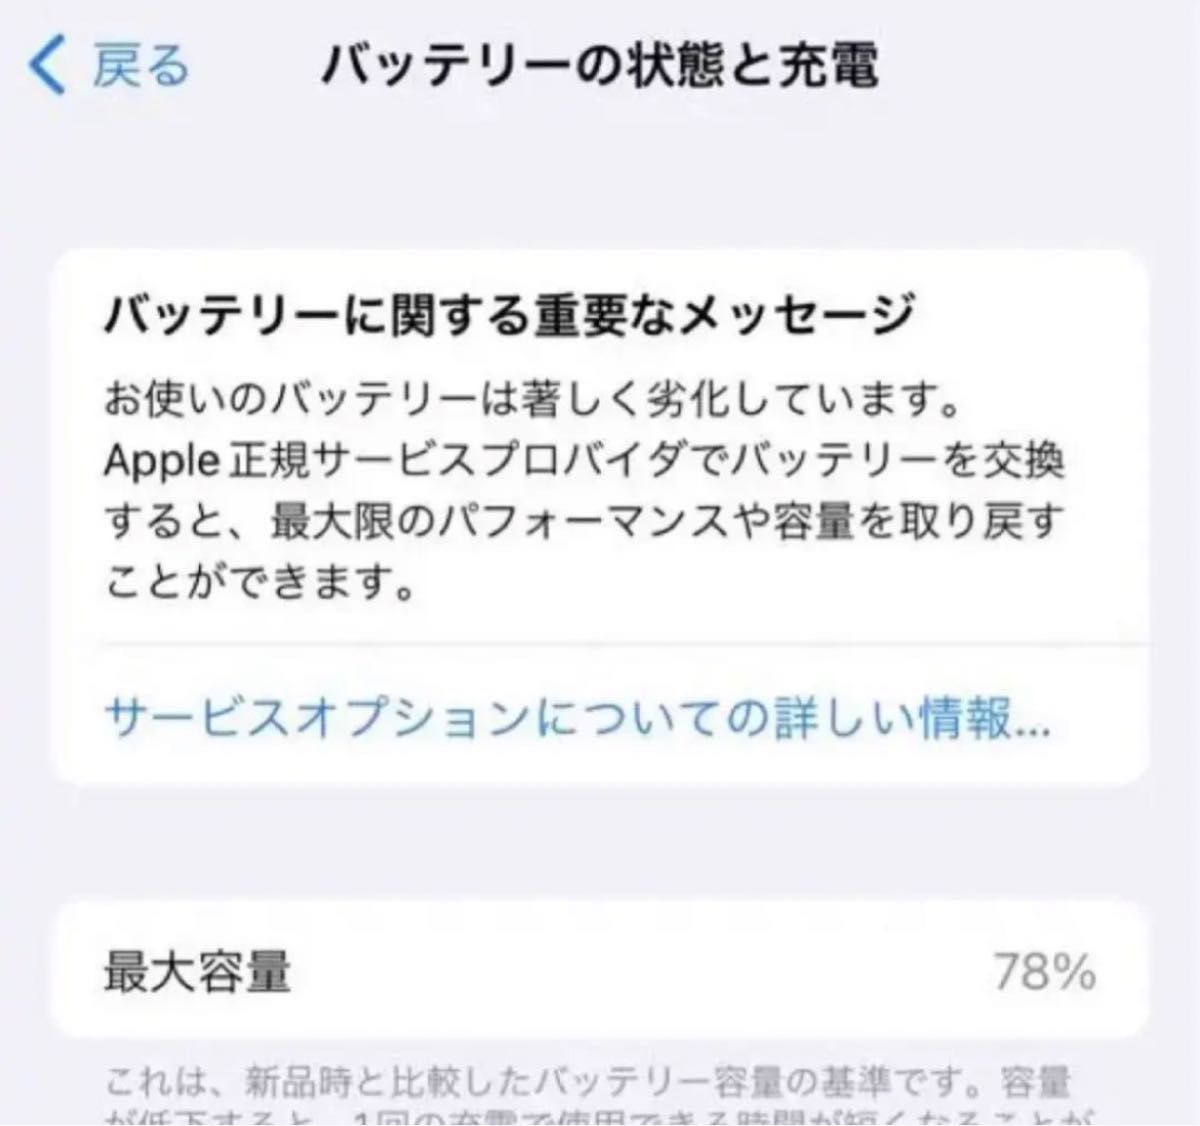 美品☆ iPhoneXs シルバー 512GB SIMフリー 78%docomo